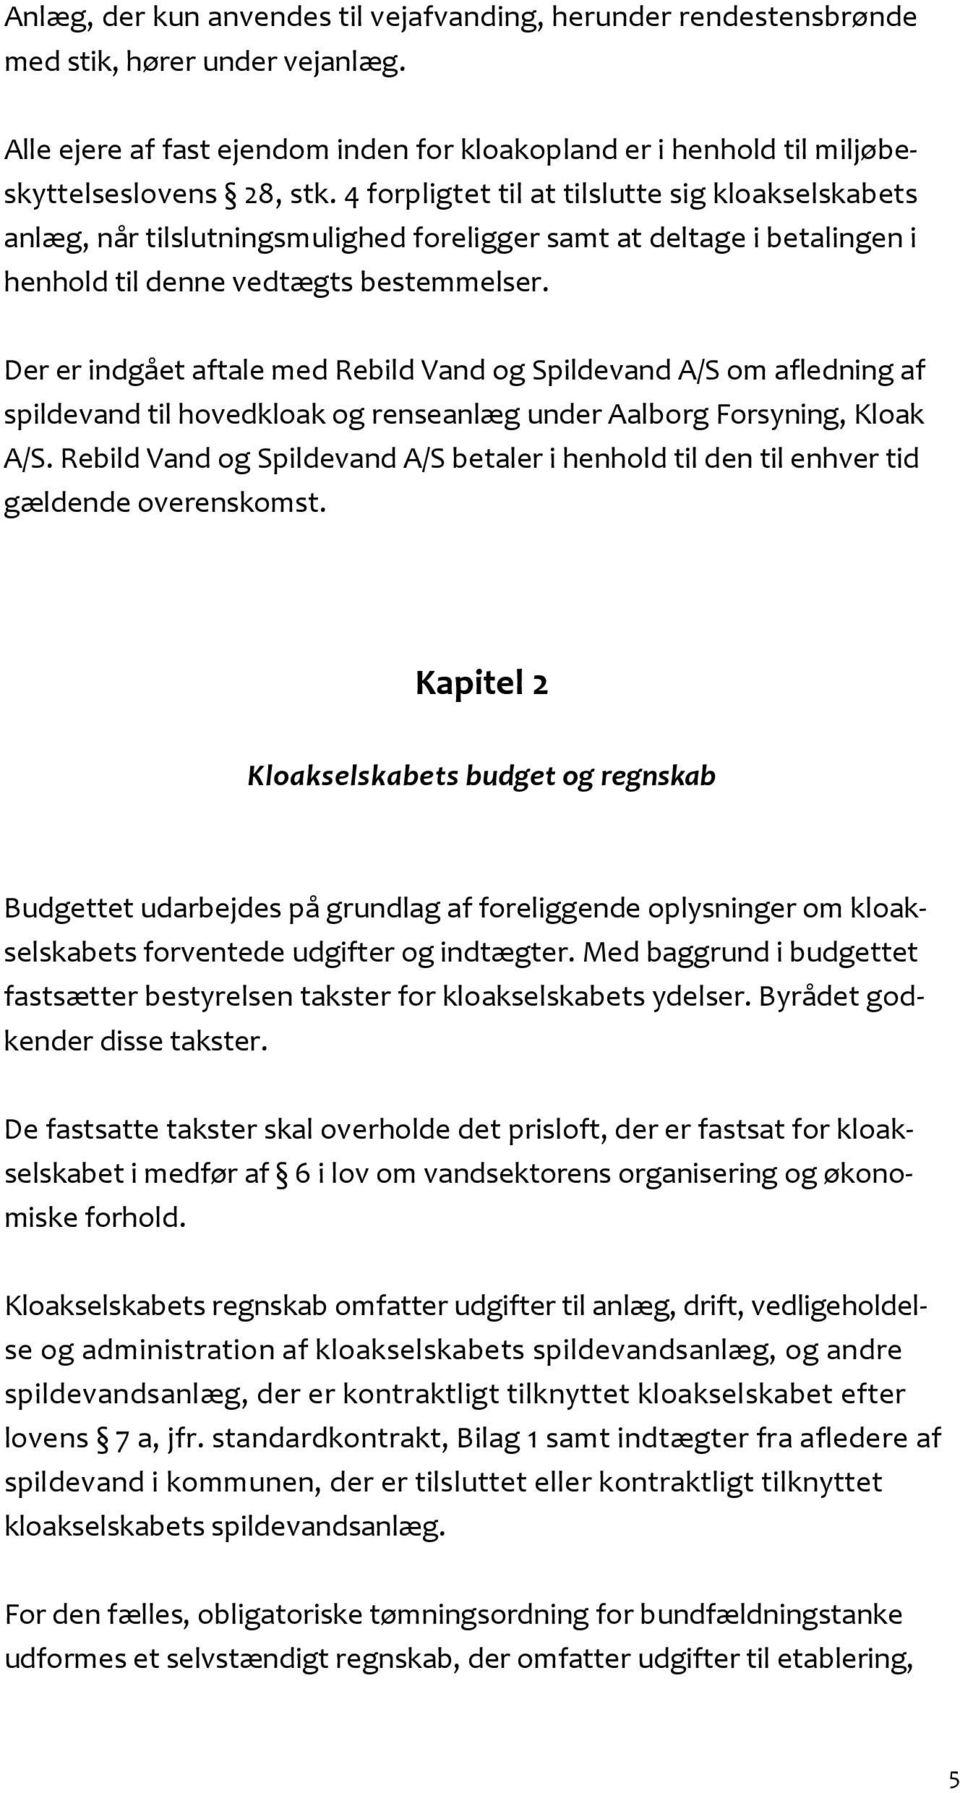 Der er indgået aftale med Rebild Vand og Spildevand A/S om afledning af spildevand til hovedkloak og renseanlæg under Aalborg Forsyning, Kloak A/S.